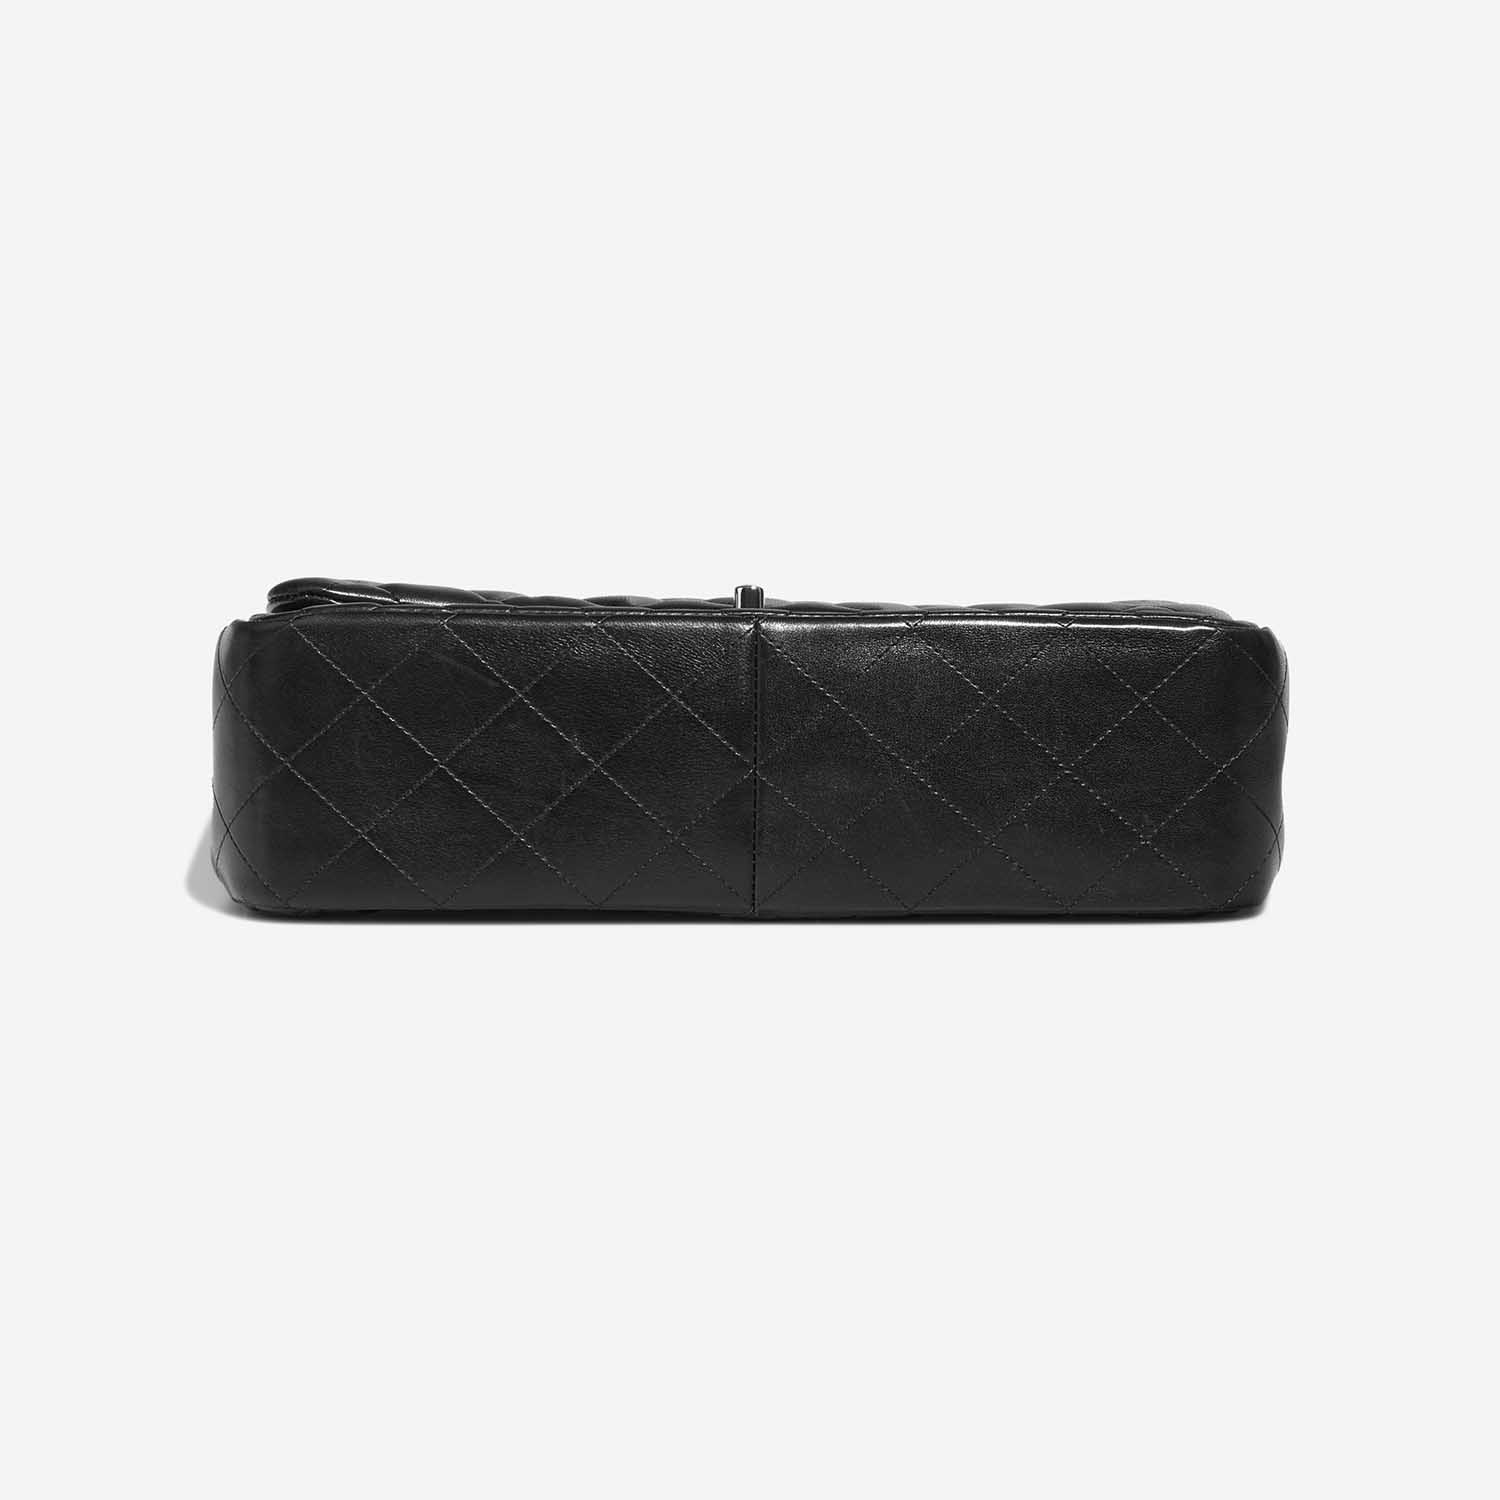 Chanel Timeless Jumbo Black Bottom | Verkaufen Sie Ihre Designer-Tasche auf Saclab.com